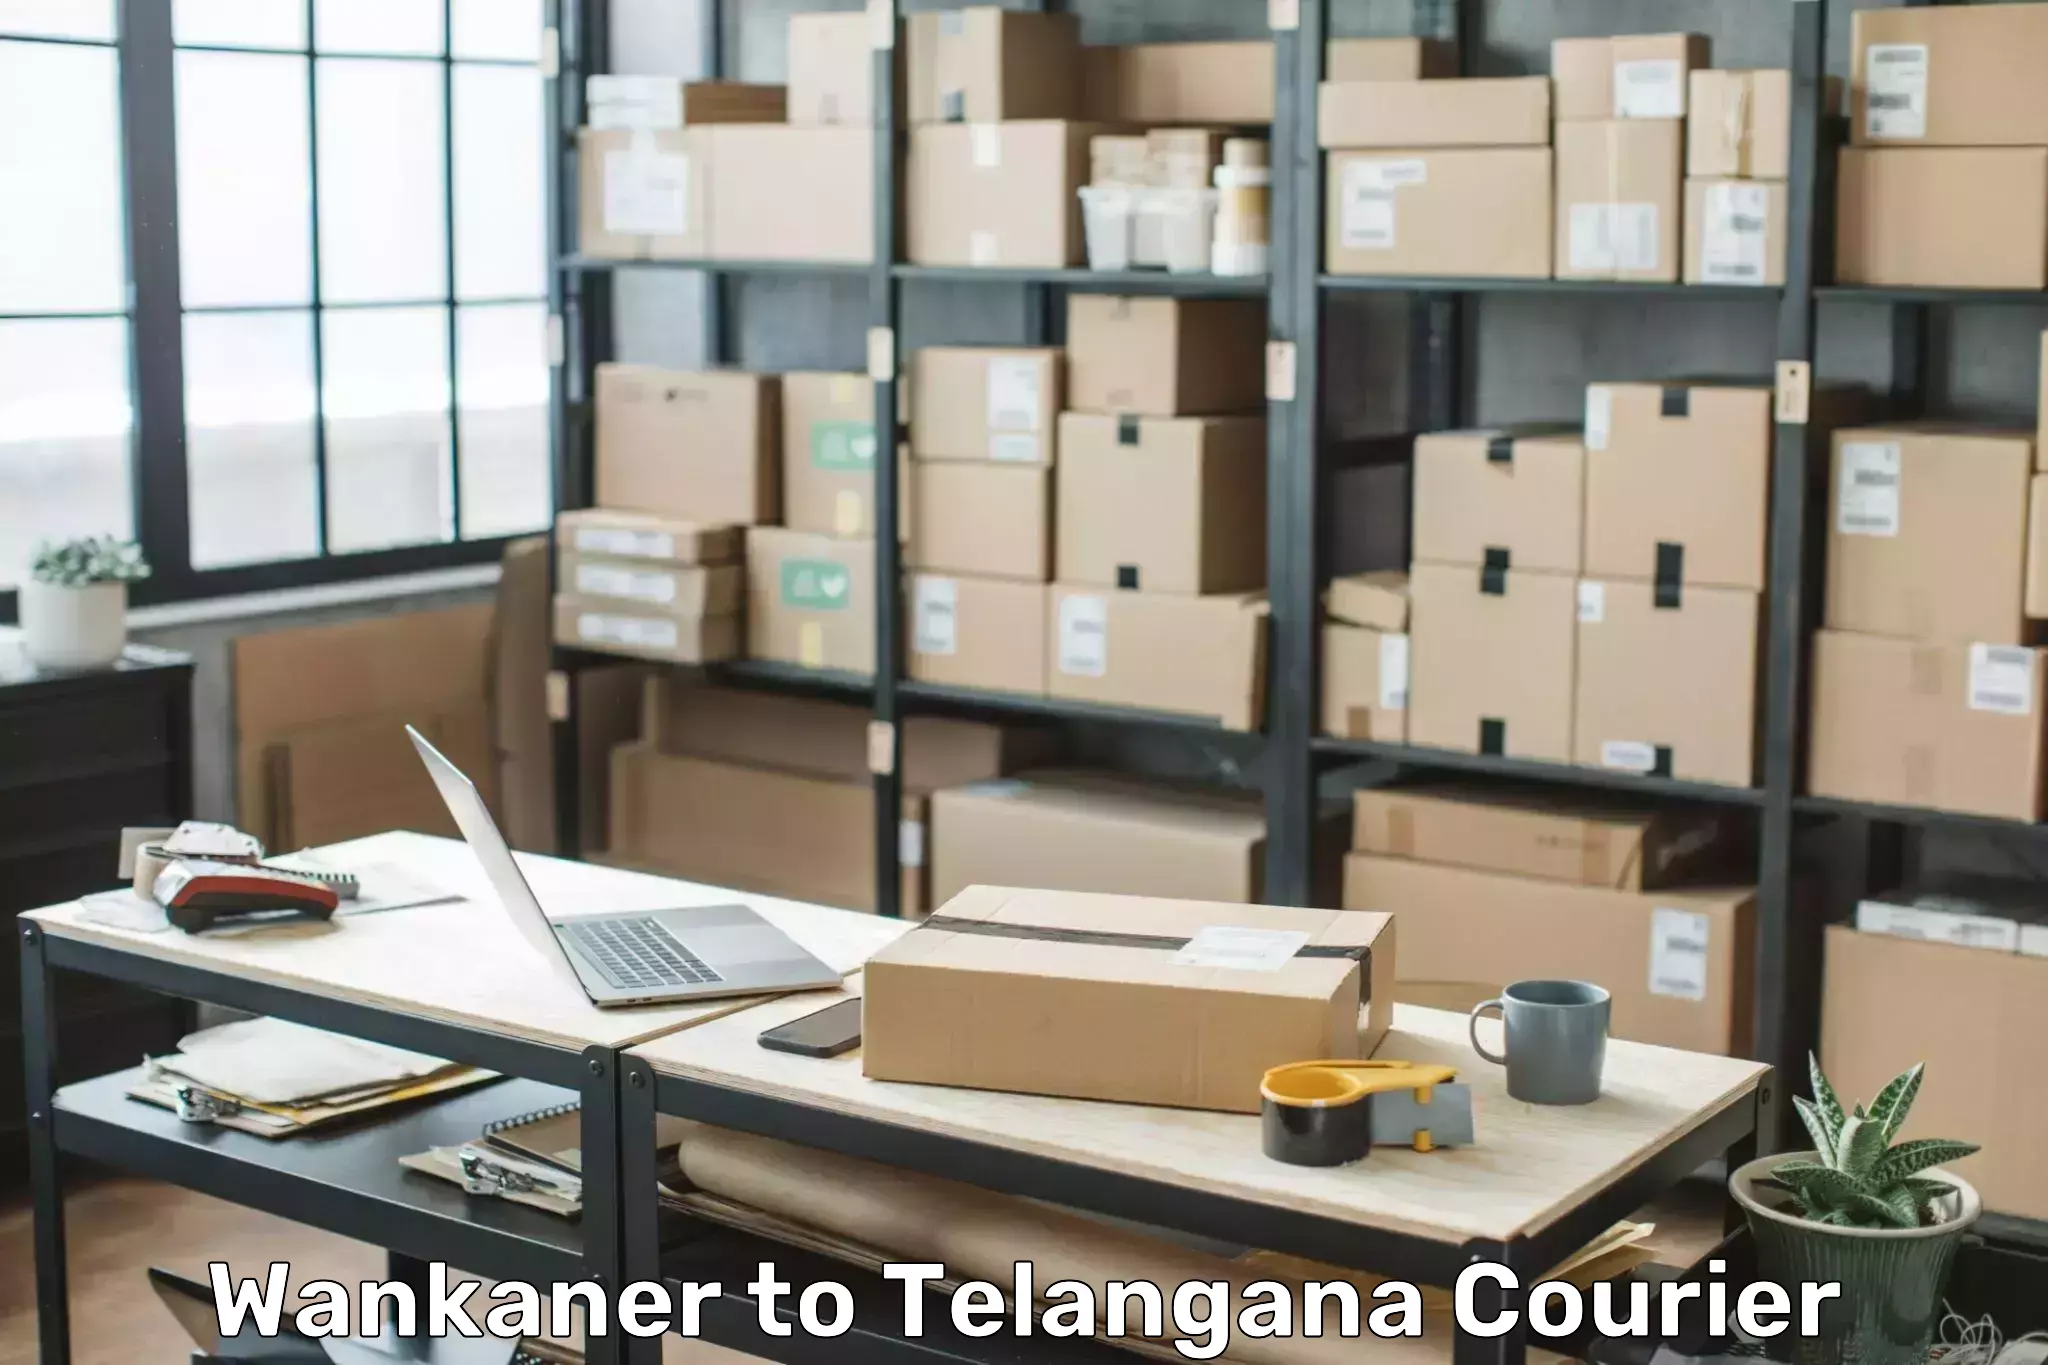 Baggage shipping schedule in Wankaner to Telangana